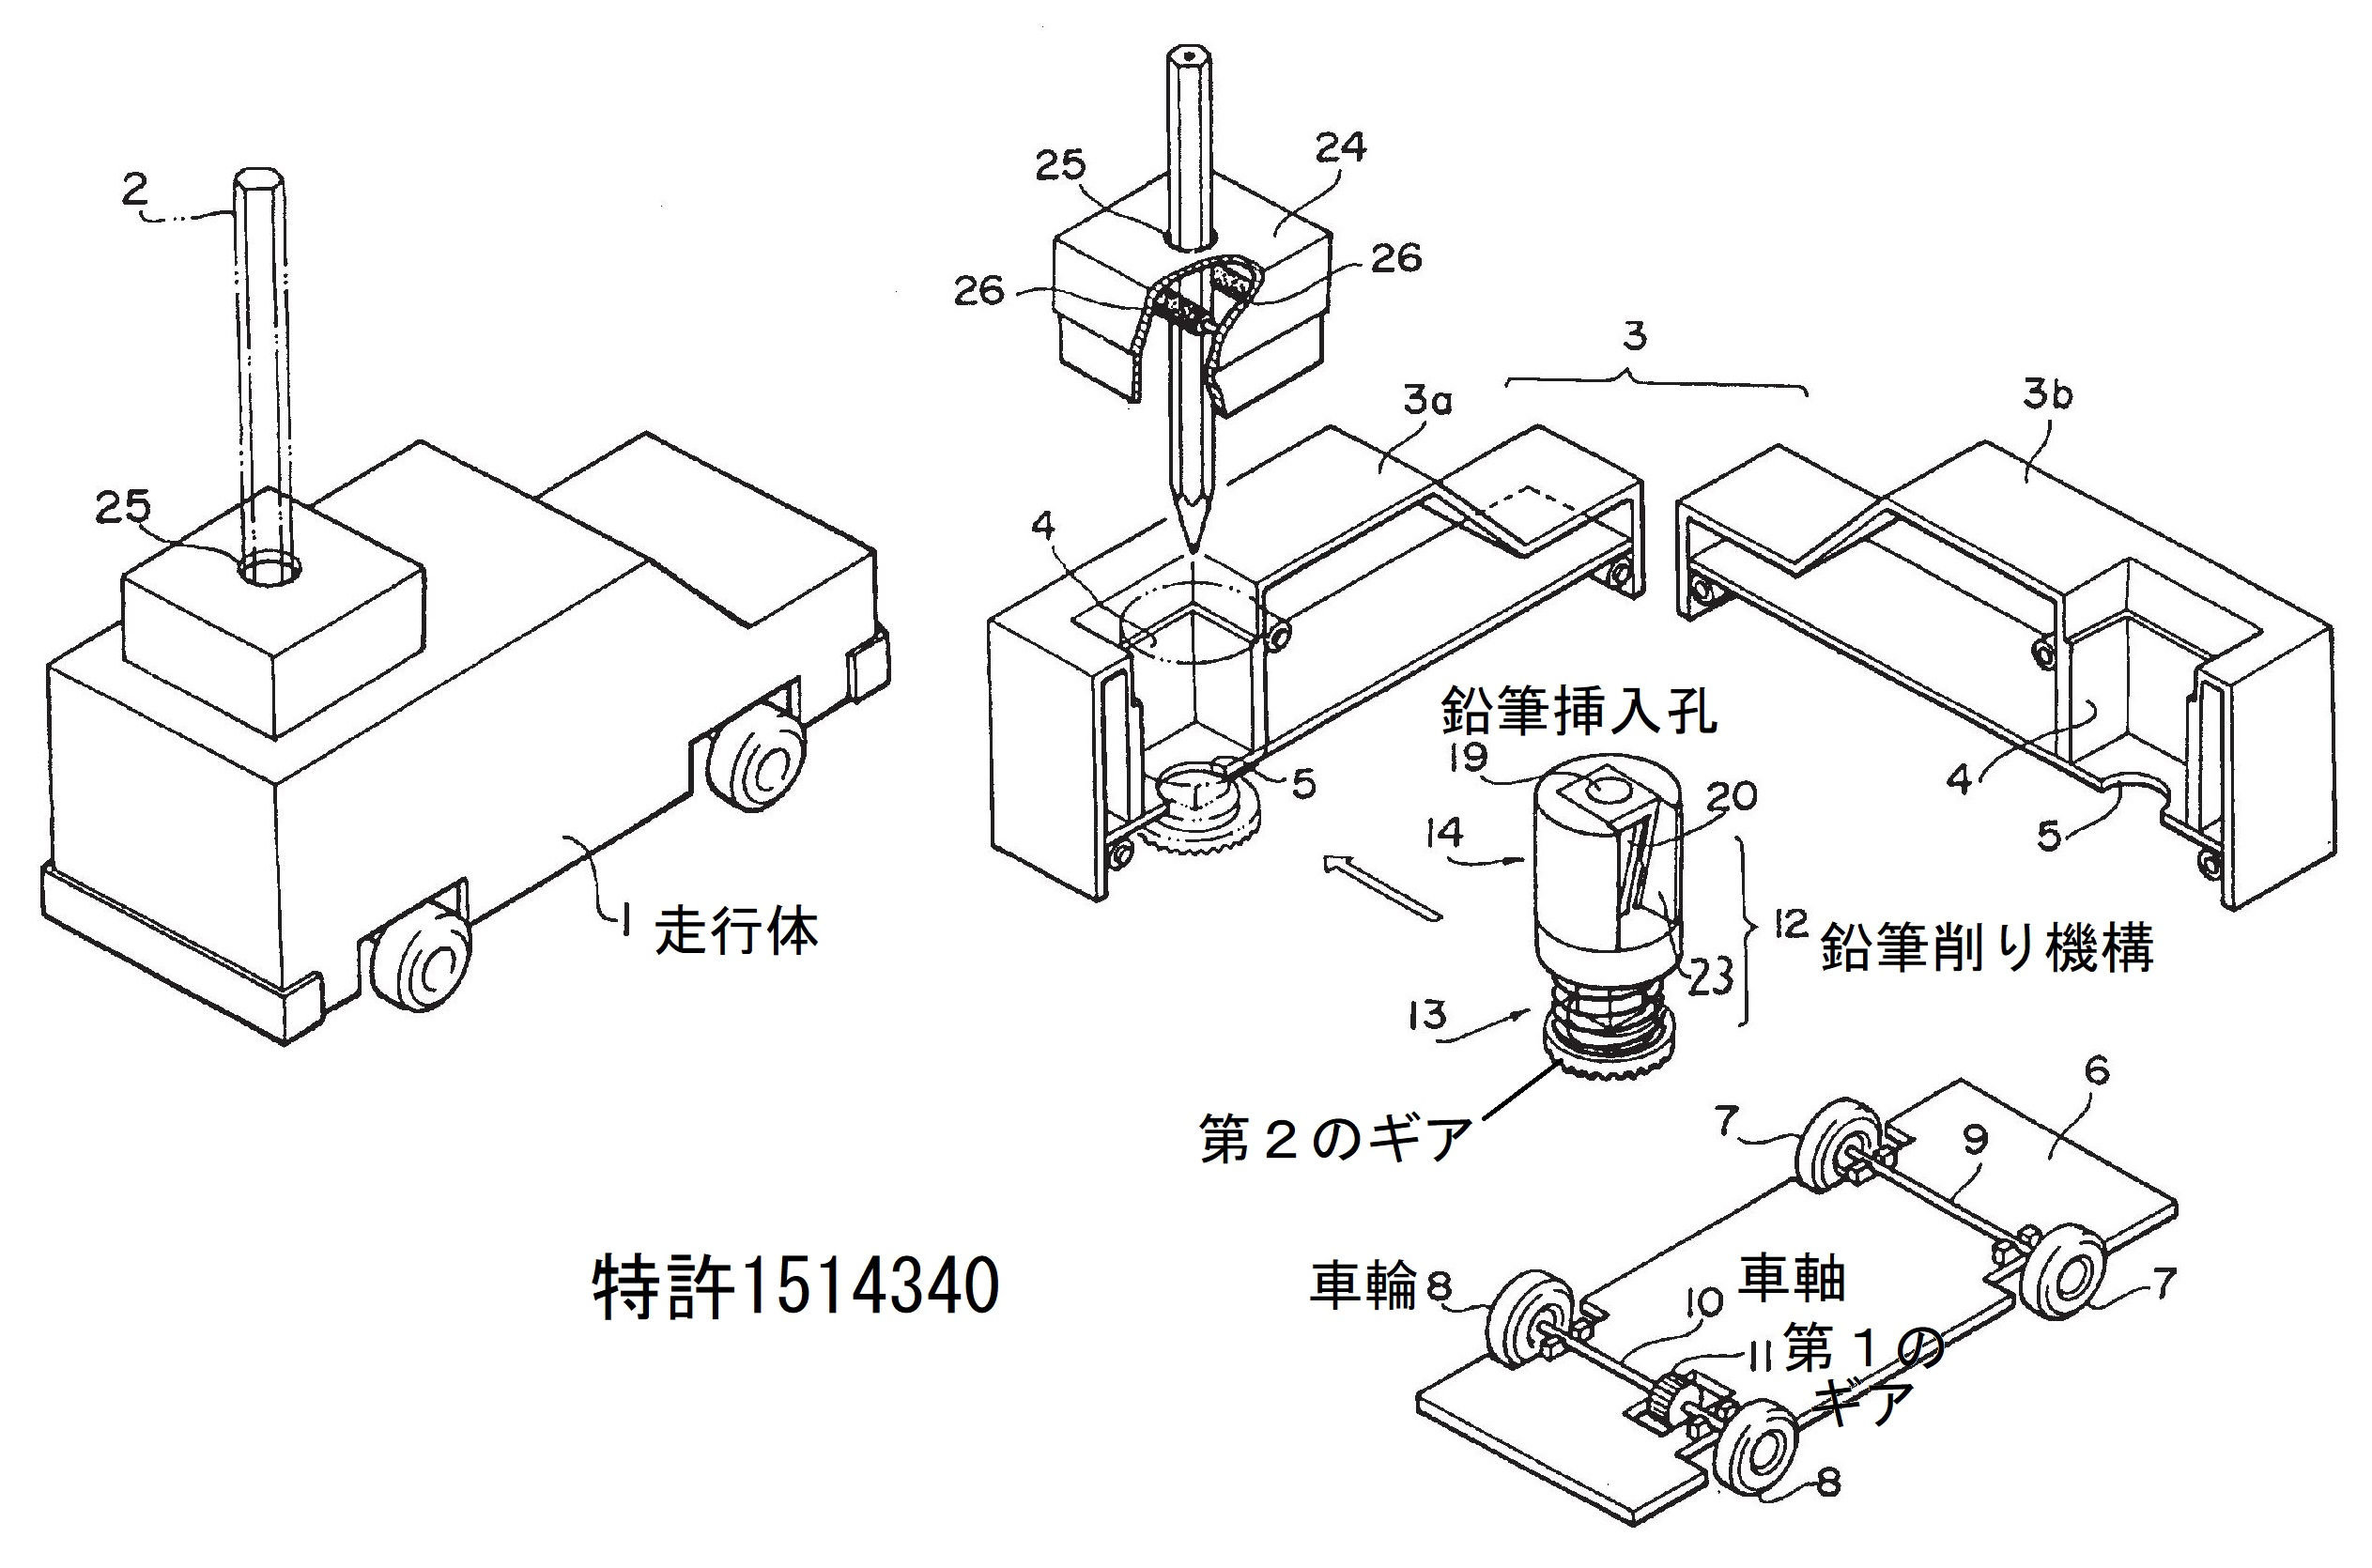 特許・実用新案の例：鉛筆削り付走行玩具